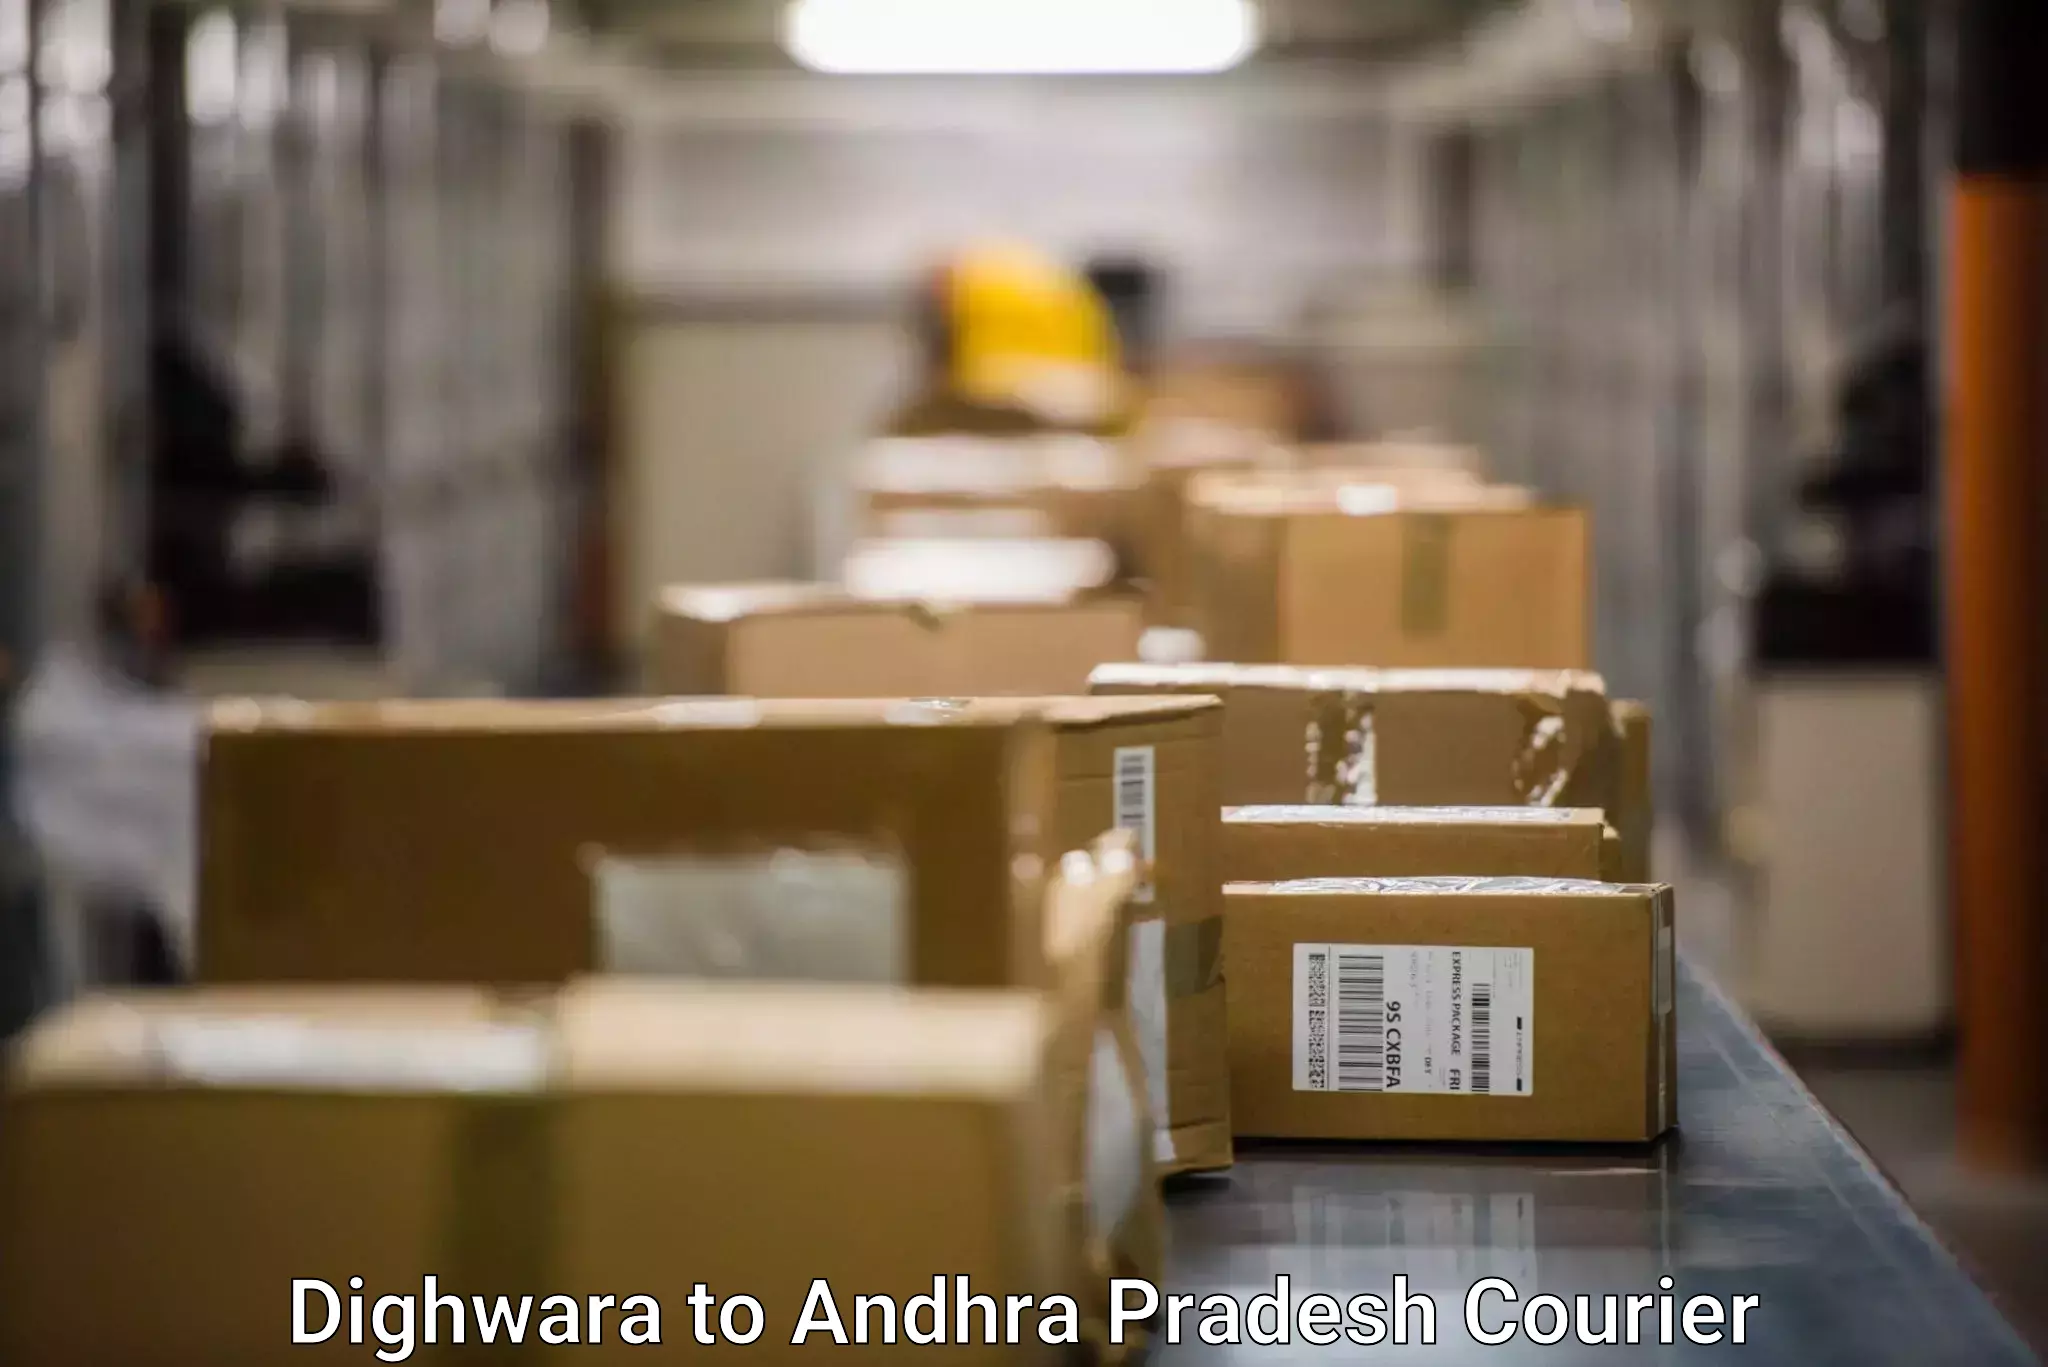 Wholesale parcel delivery Dighwara to Visakhapatnam Port